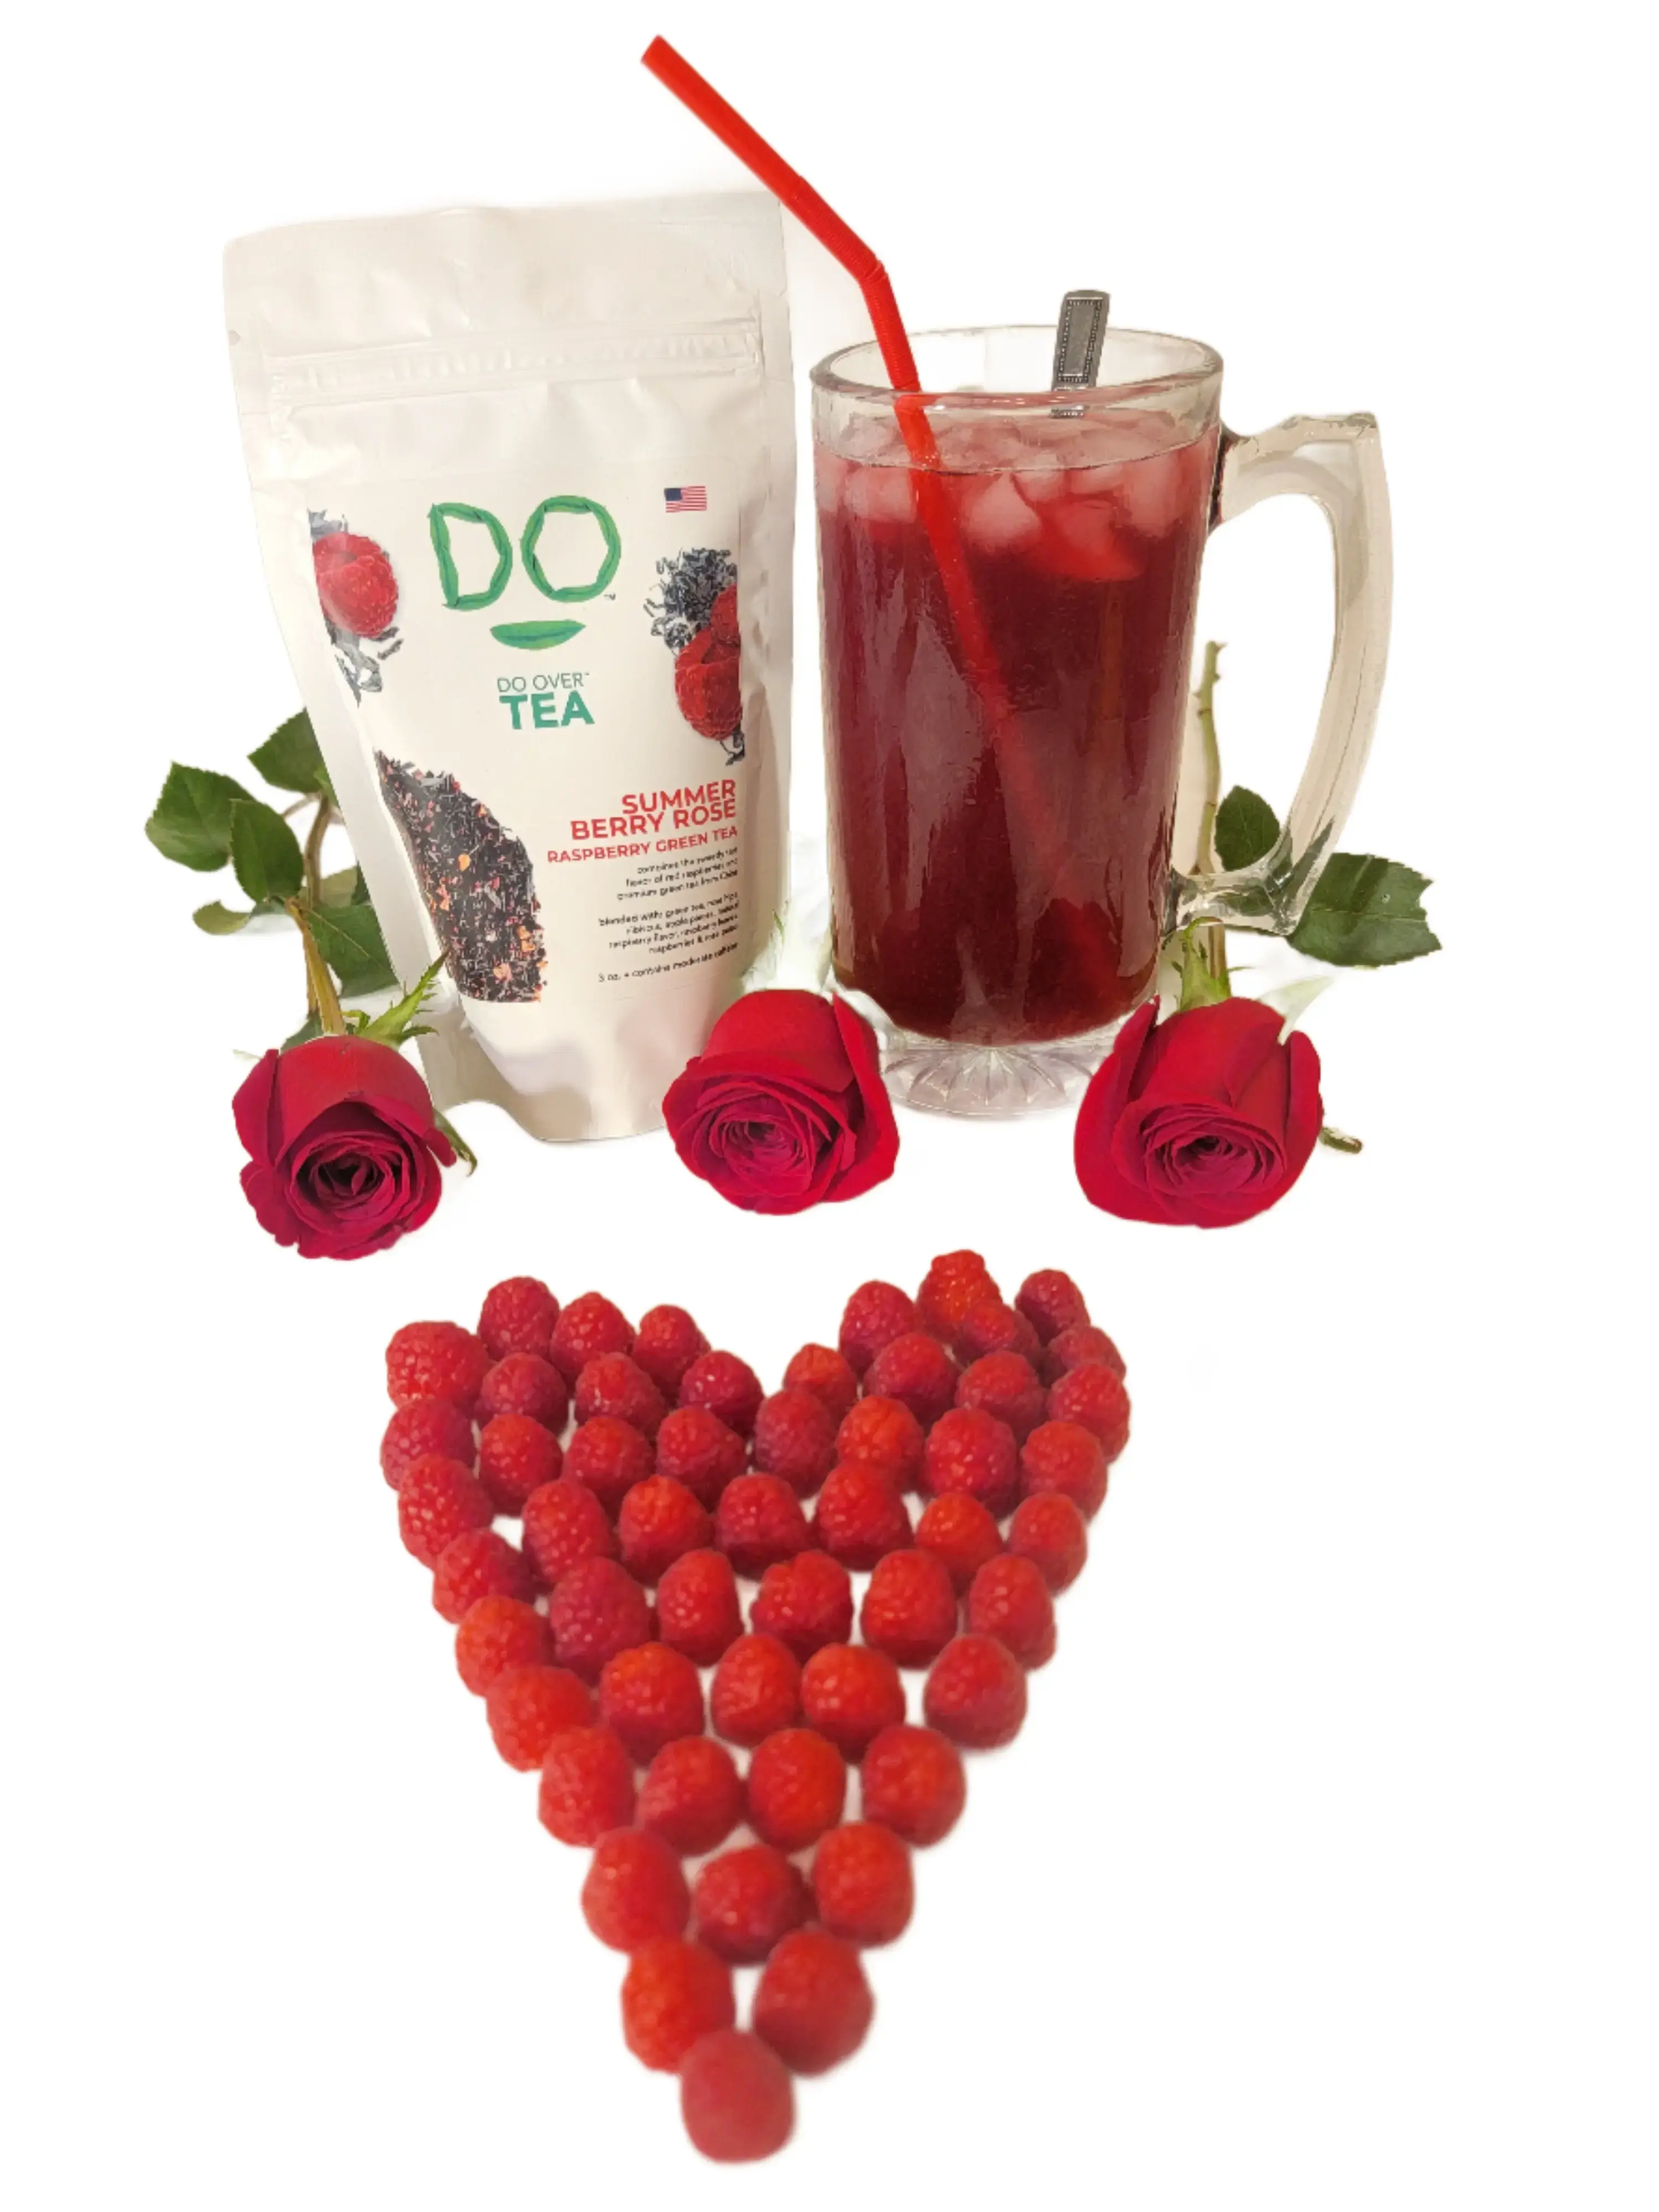 Do Over Tea Summer Berry Rose Raspberry Green Tea Do Over Corner Store LLC